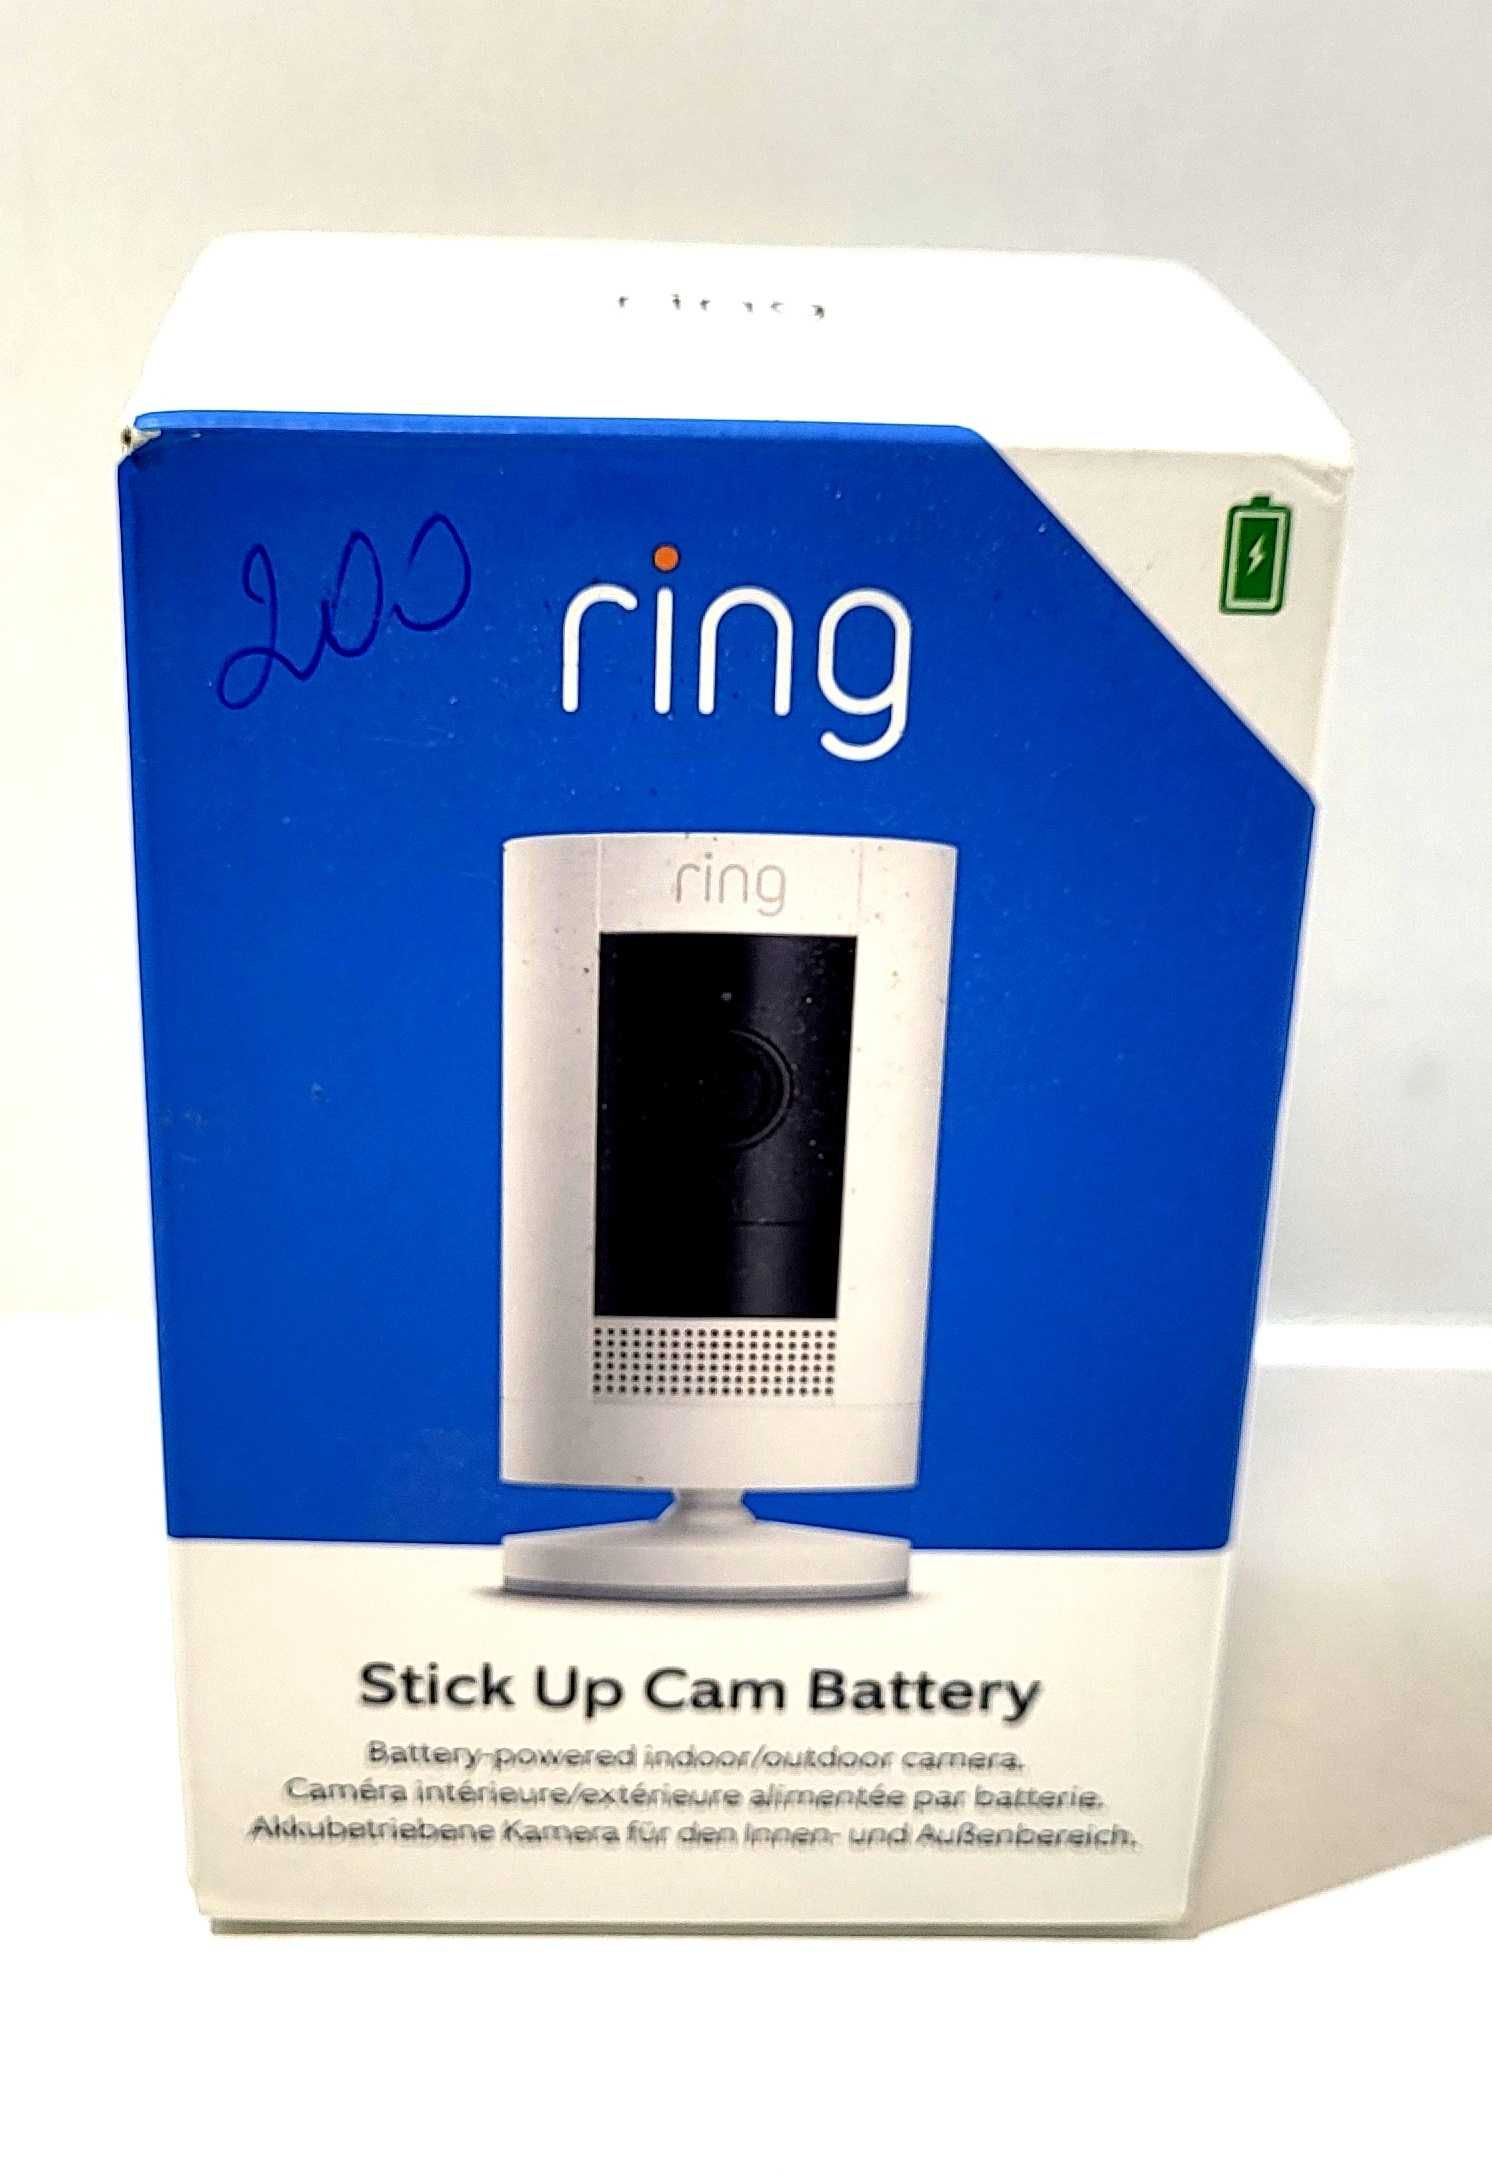 Kamera kompaktowa (box) IP Ring Stick Up Cam Battery 2 Mpx